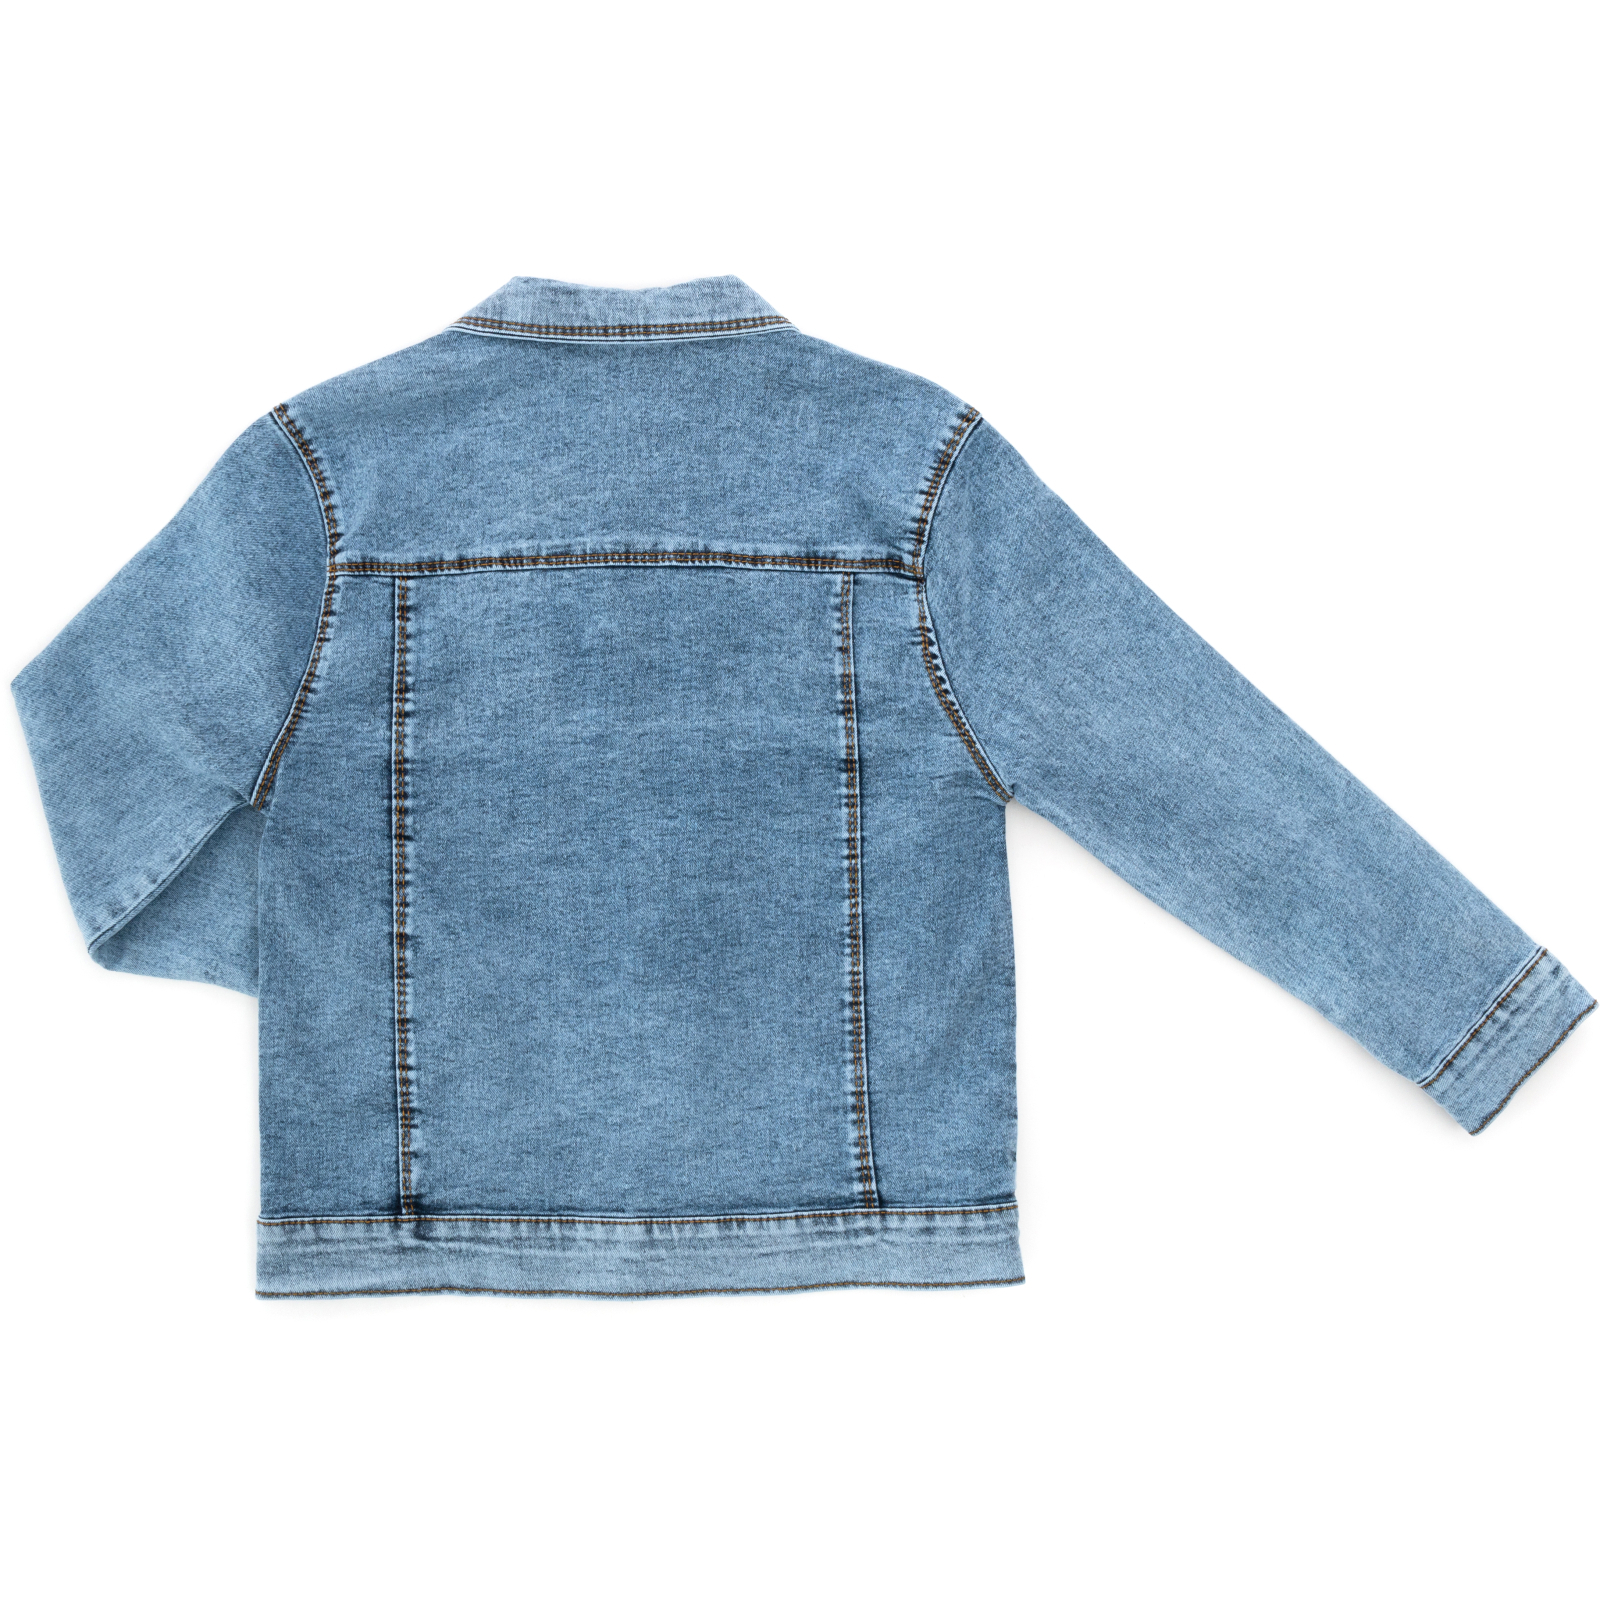 Пиджак Sercino джинсовый (99723-134B-blue) изображение 2